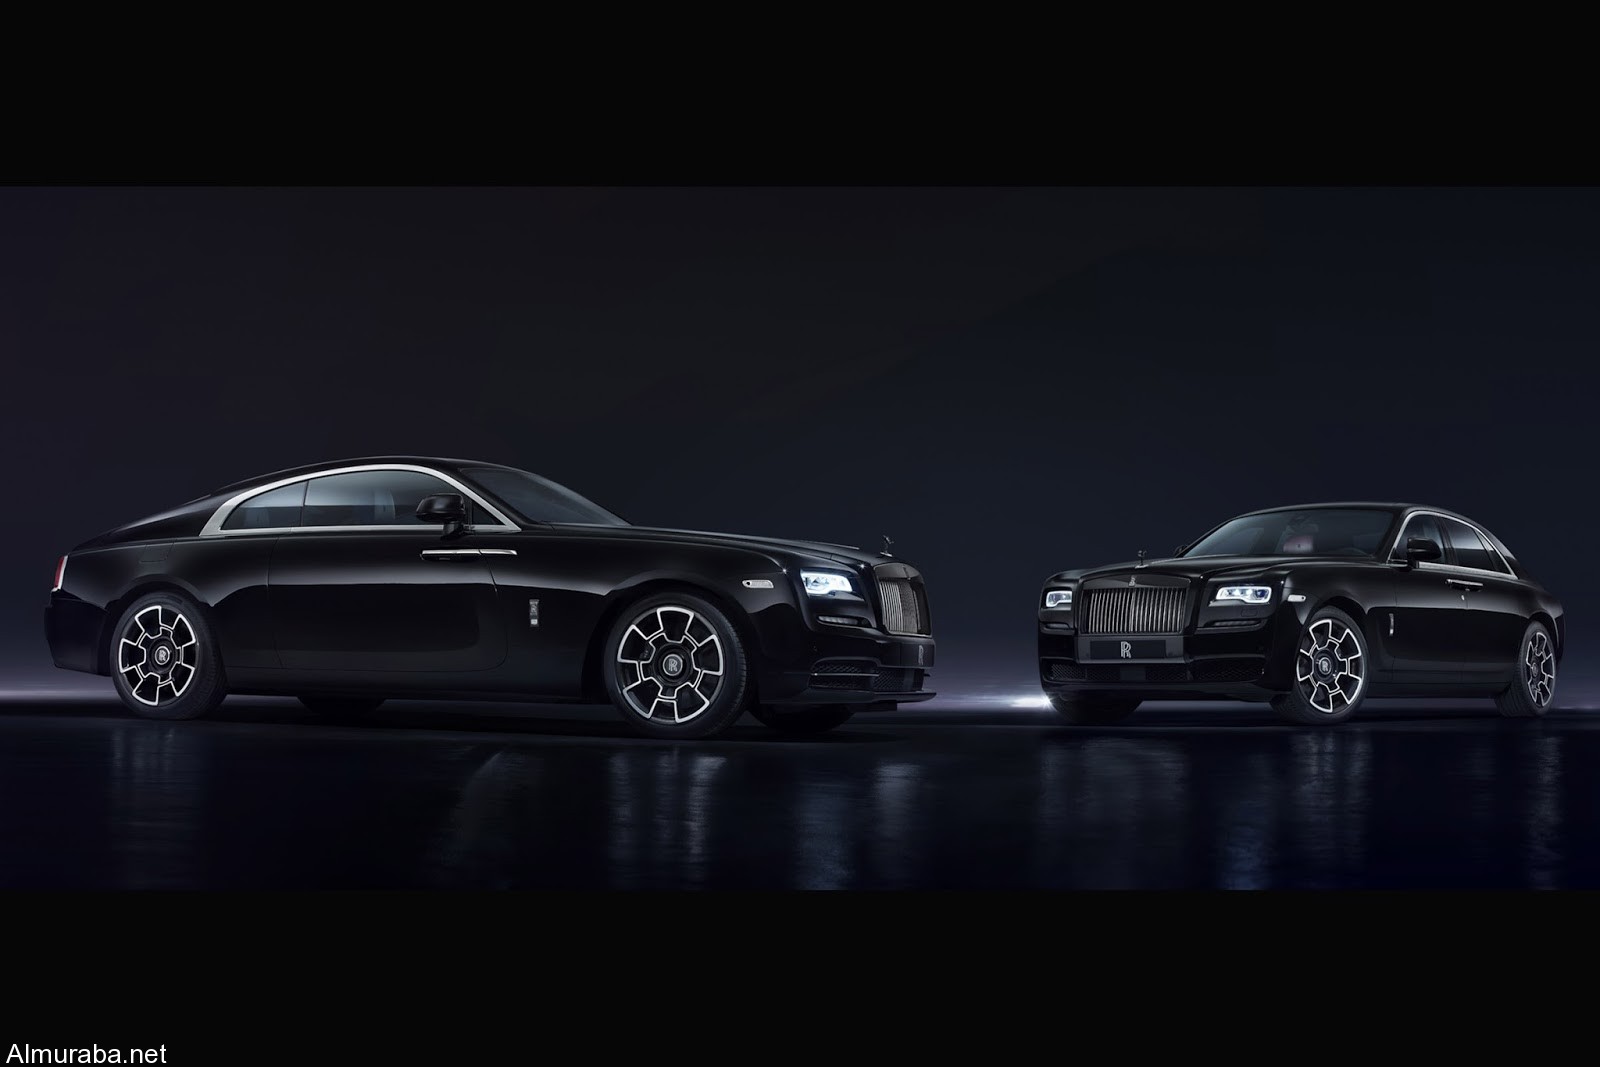 “رولز رويس'” تطلق نسخة معدلة لسيارتي جوست & رايث Rolls-Royce 2016